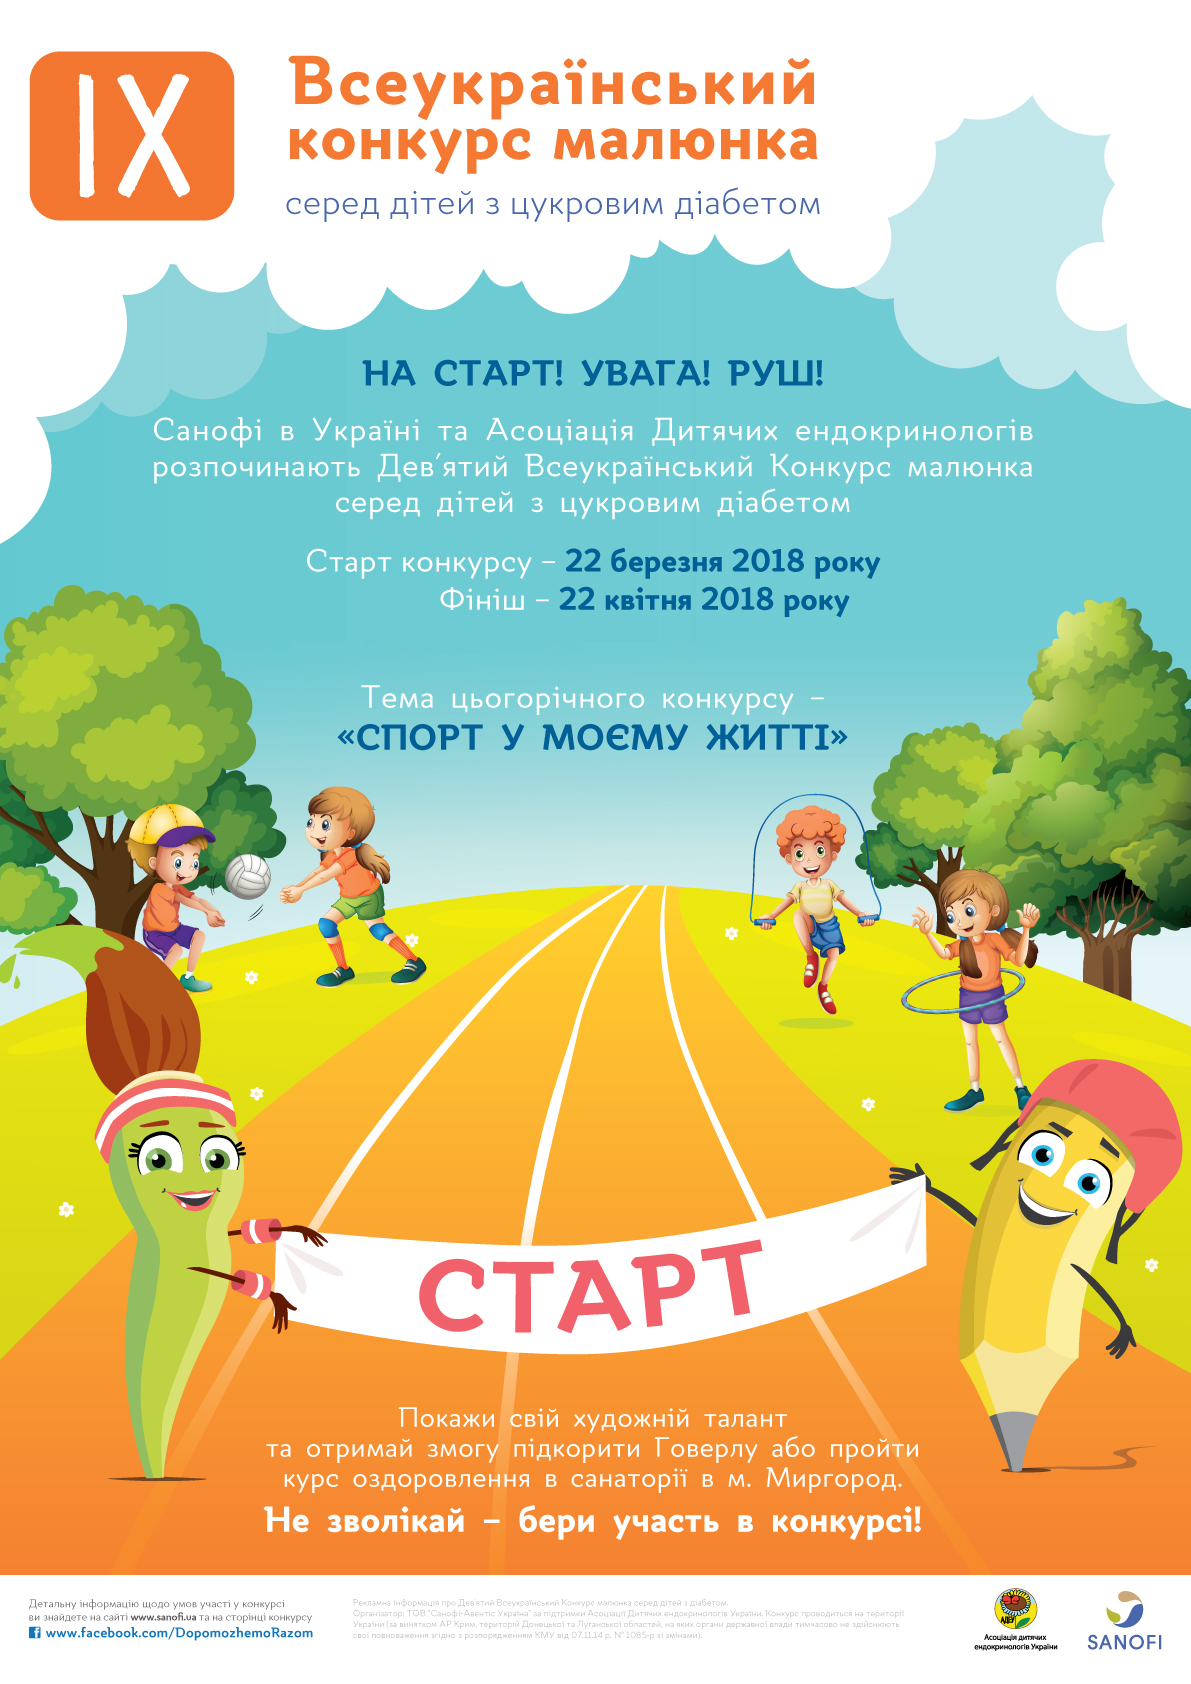  Всеукраинский конкурс рисунка среди детей с сахарным диабетом